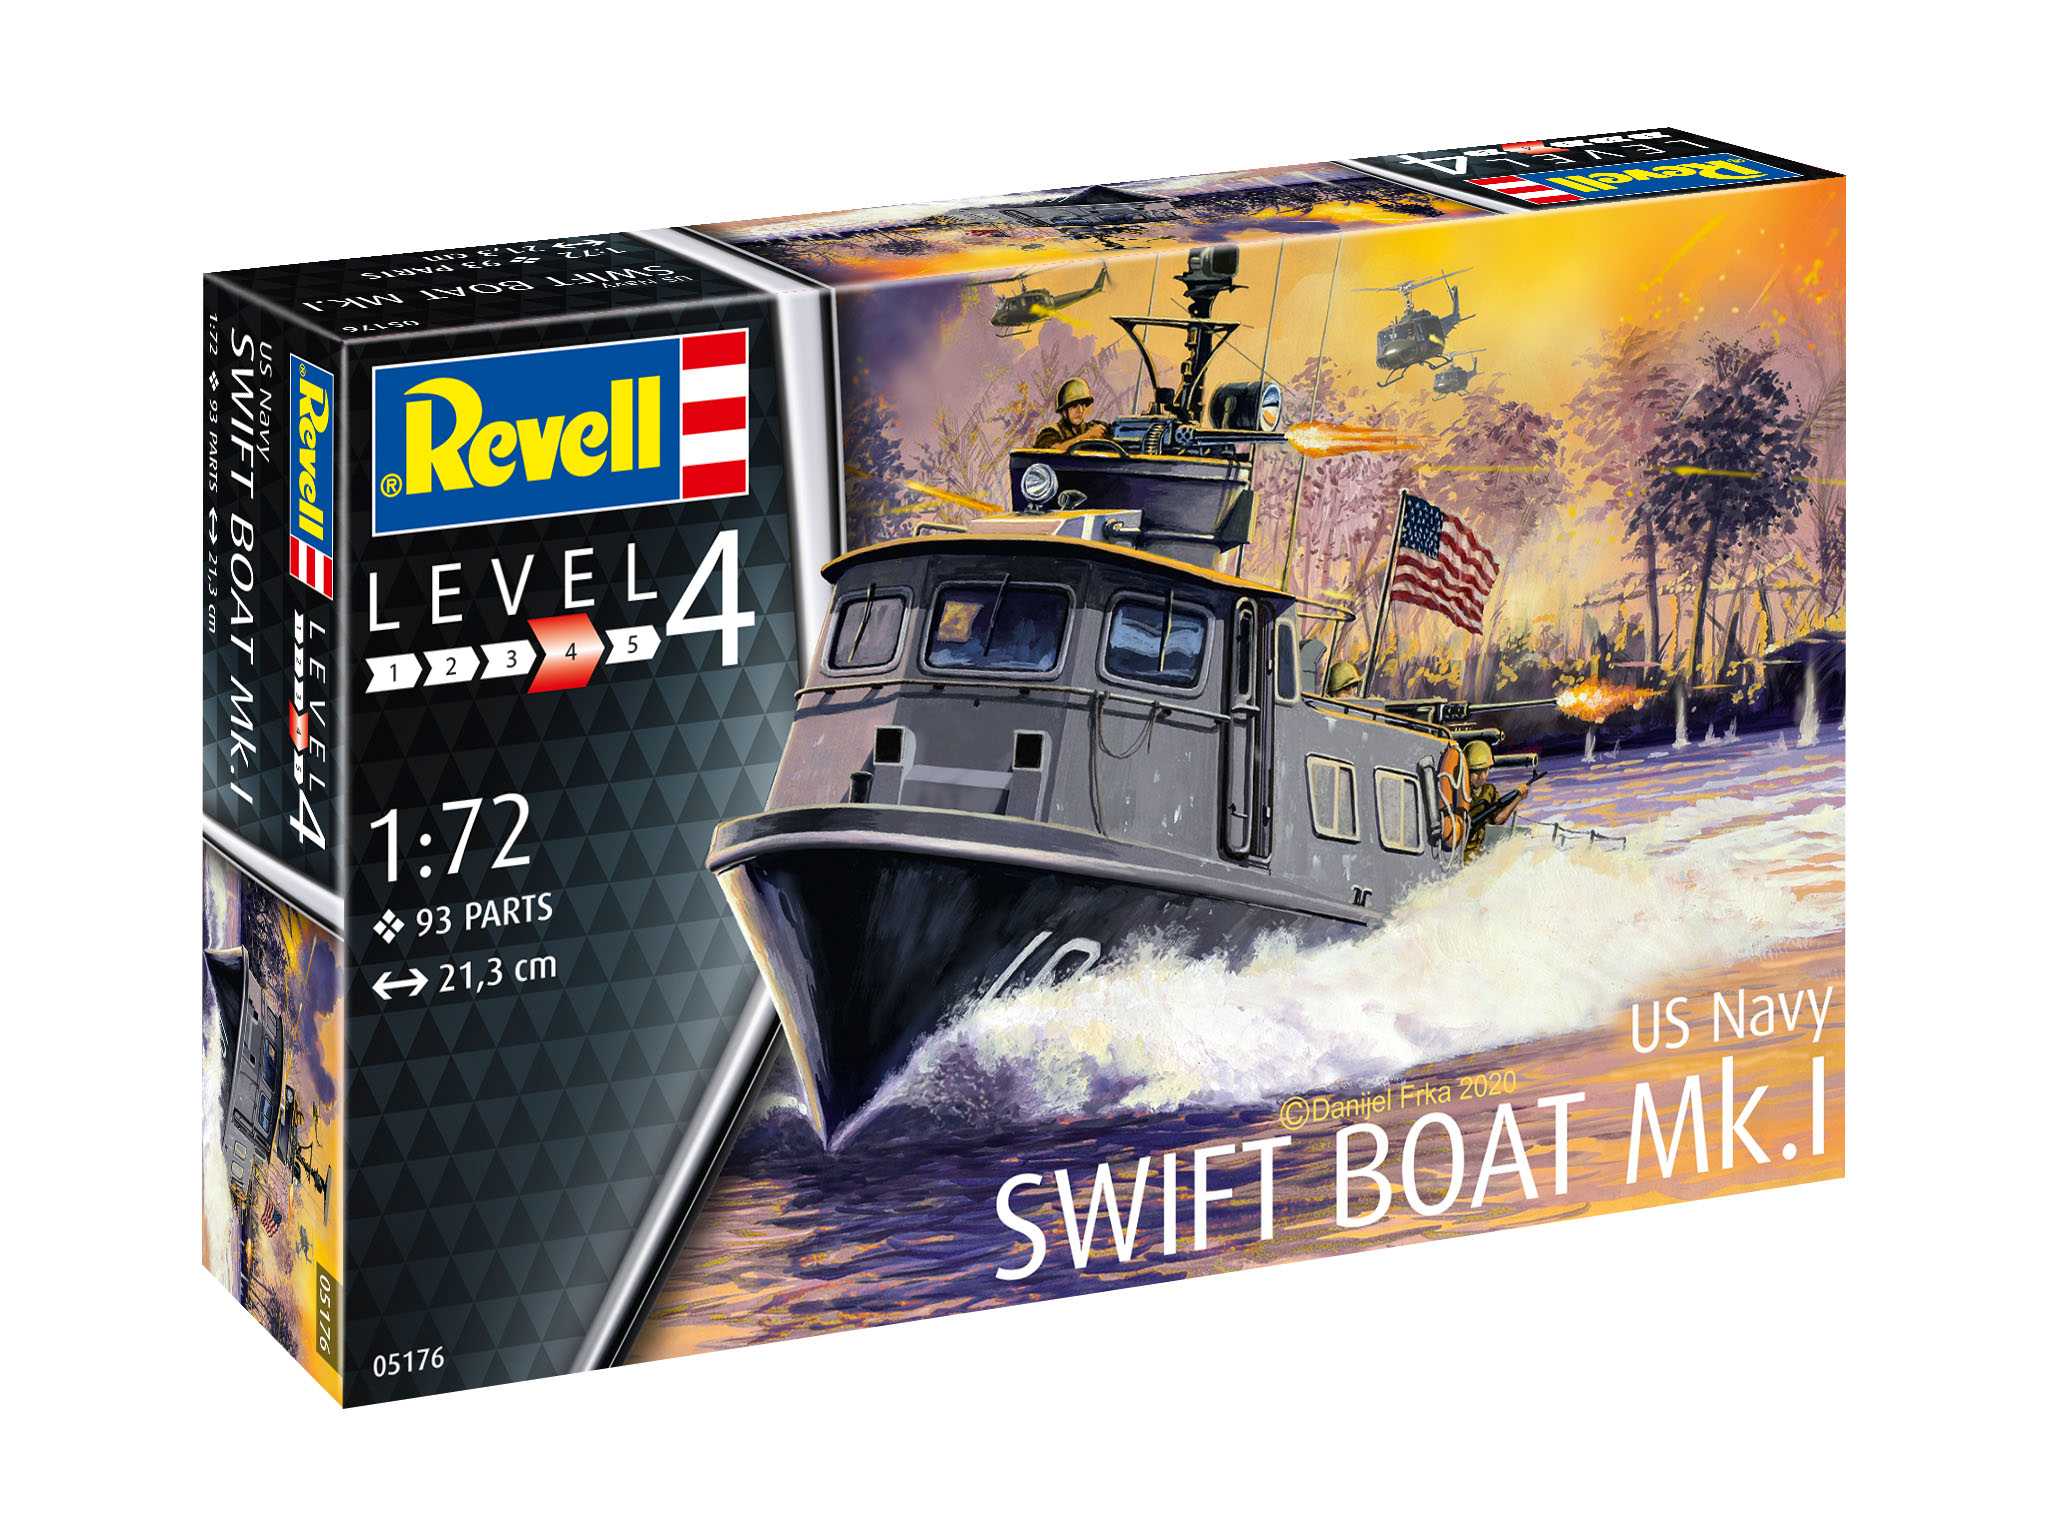 Fotografie Plastic ModelKit loď 05176 - US Navy SWIFT BOAT Mk.I (1:72)